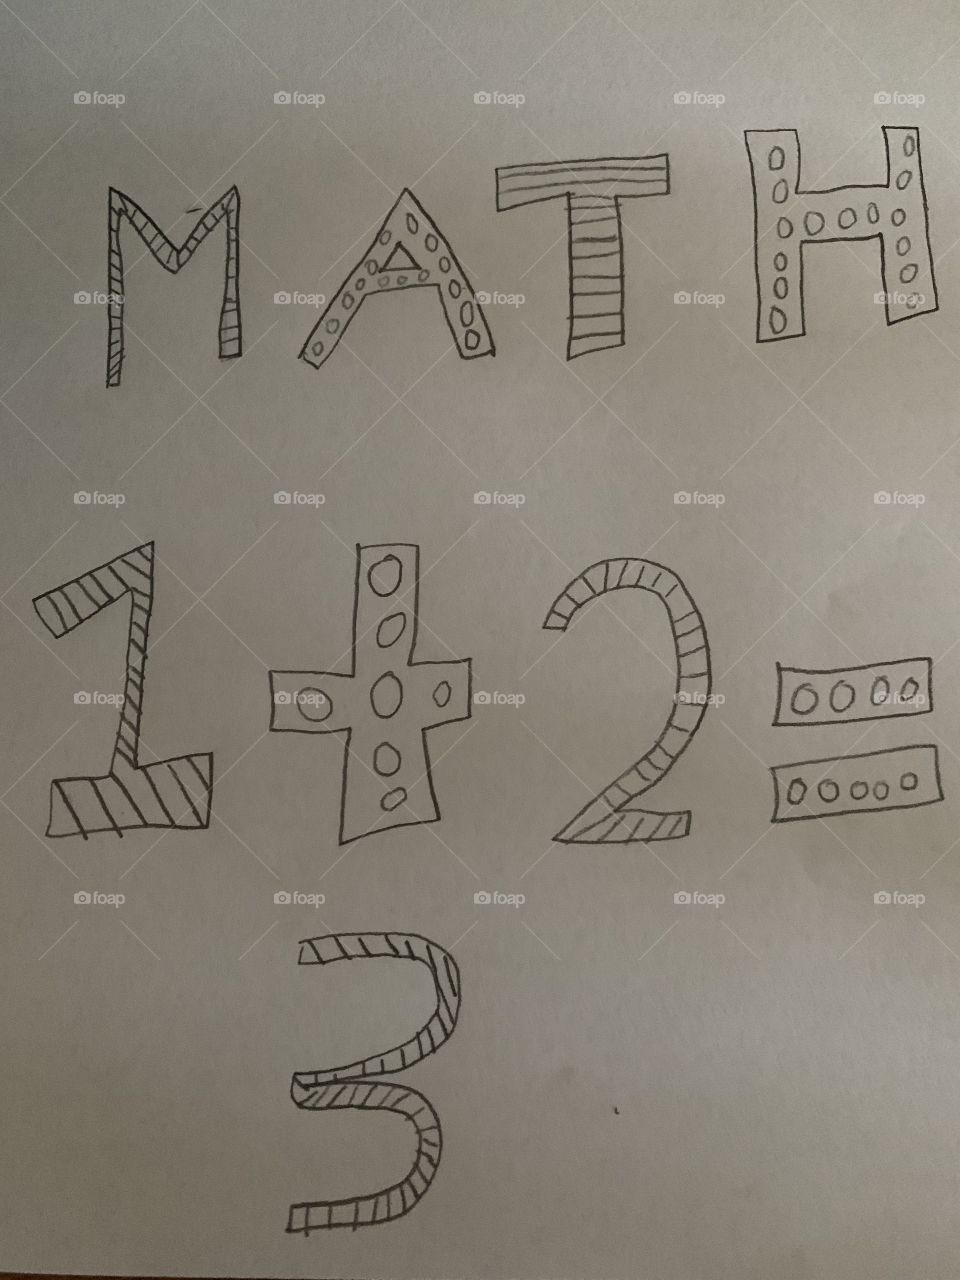 I love math!!